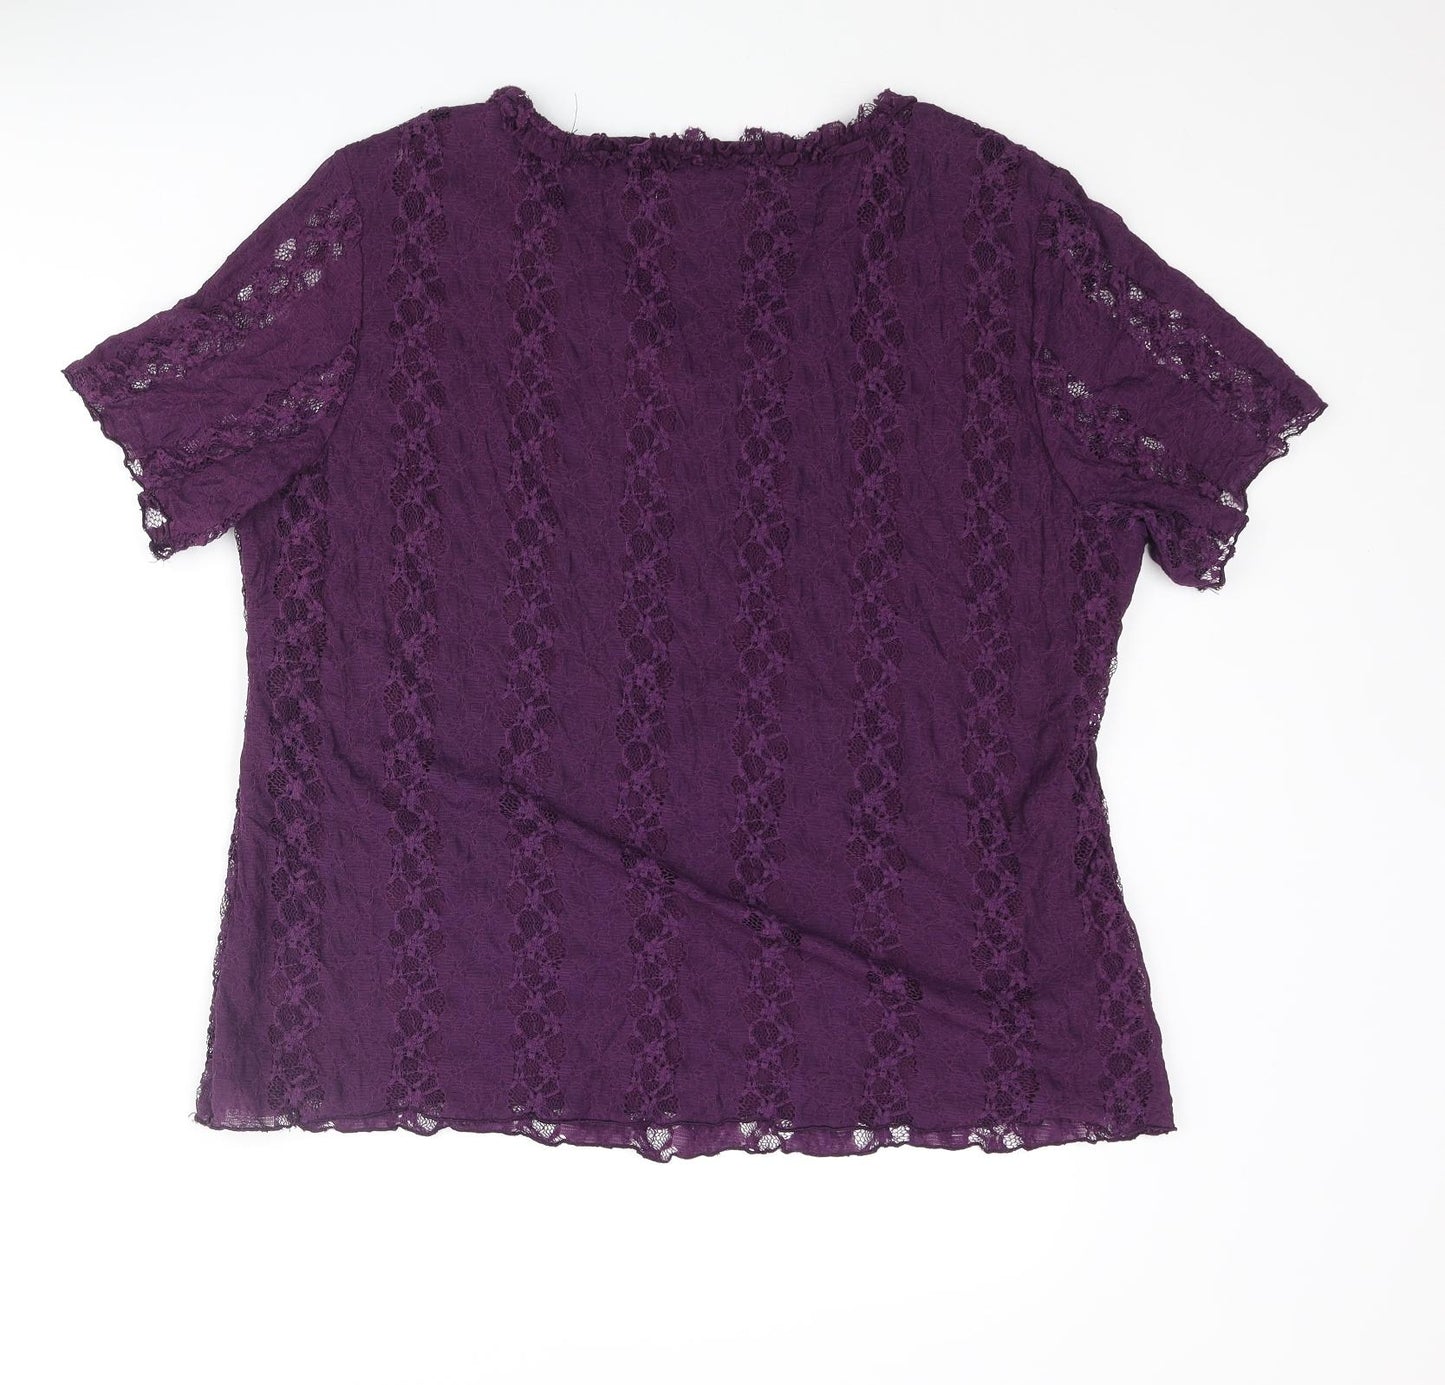 Bonmarché Womens Purple Polyester Basic Blouse Size L V-Neck - Frill